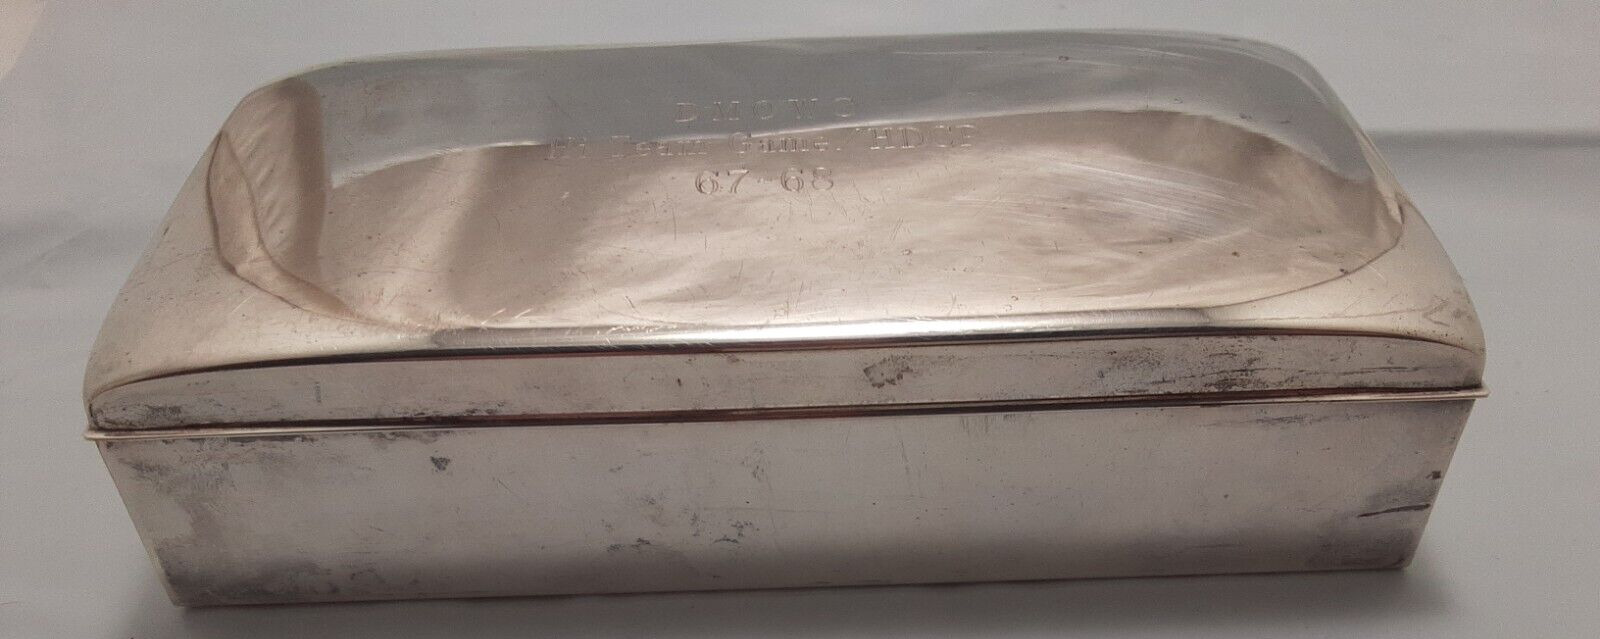 E.P.C.A Poole Silver Co. 1899 Cigarette Box wooden inside silver plate